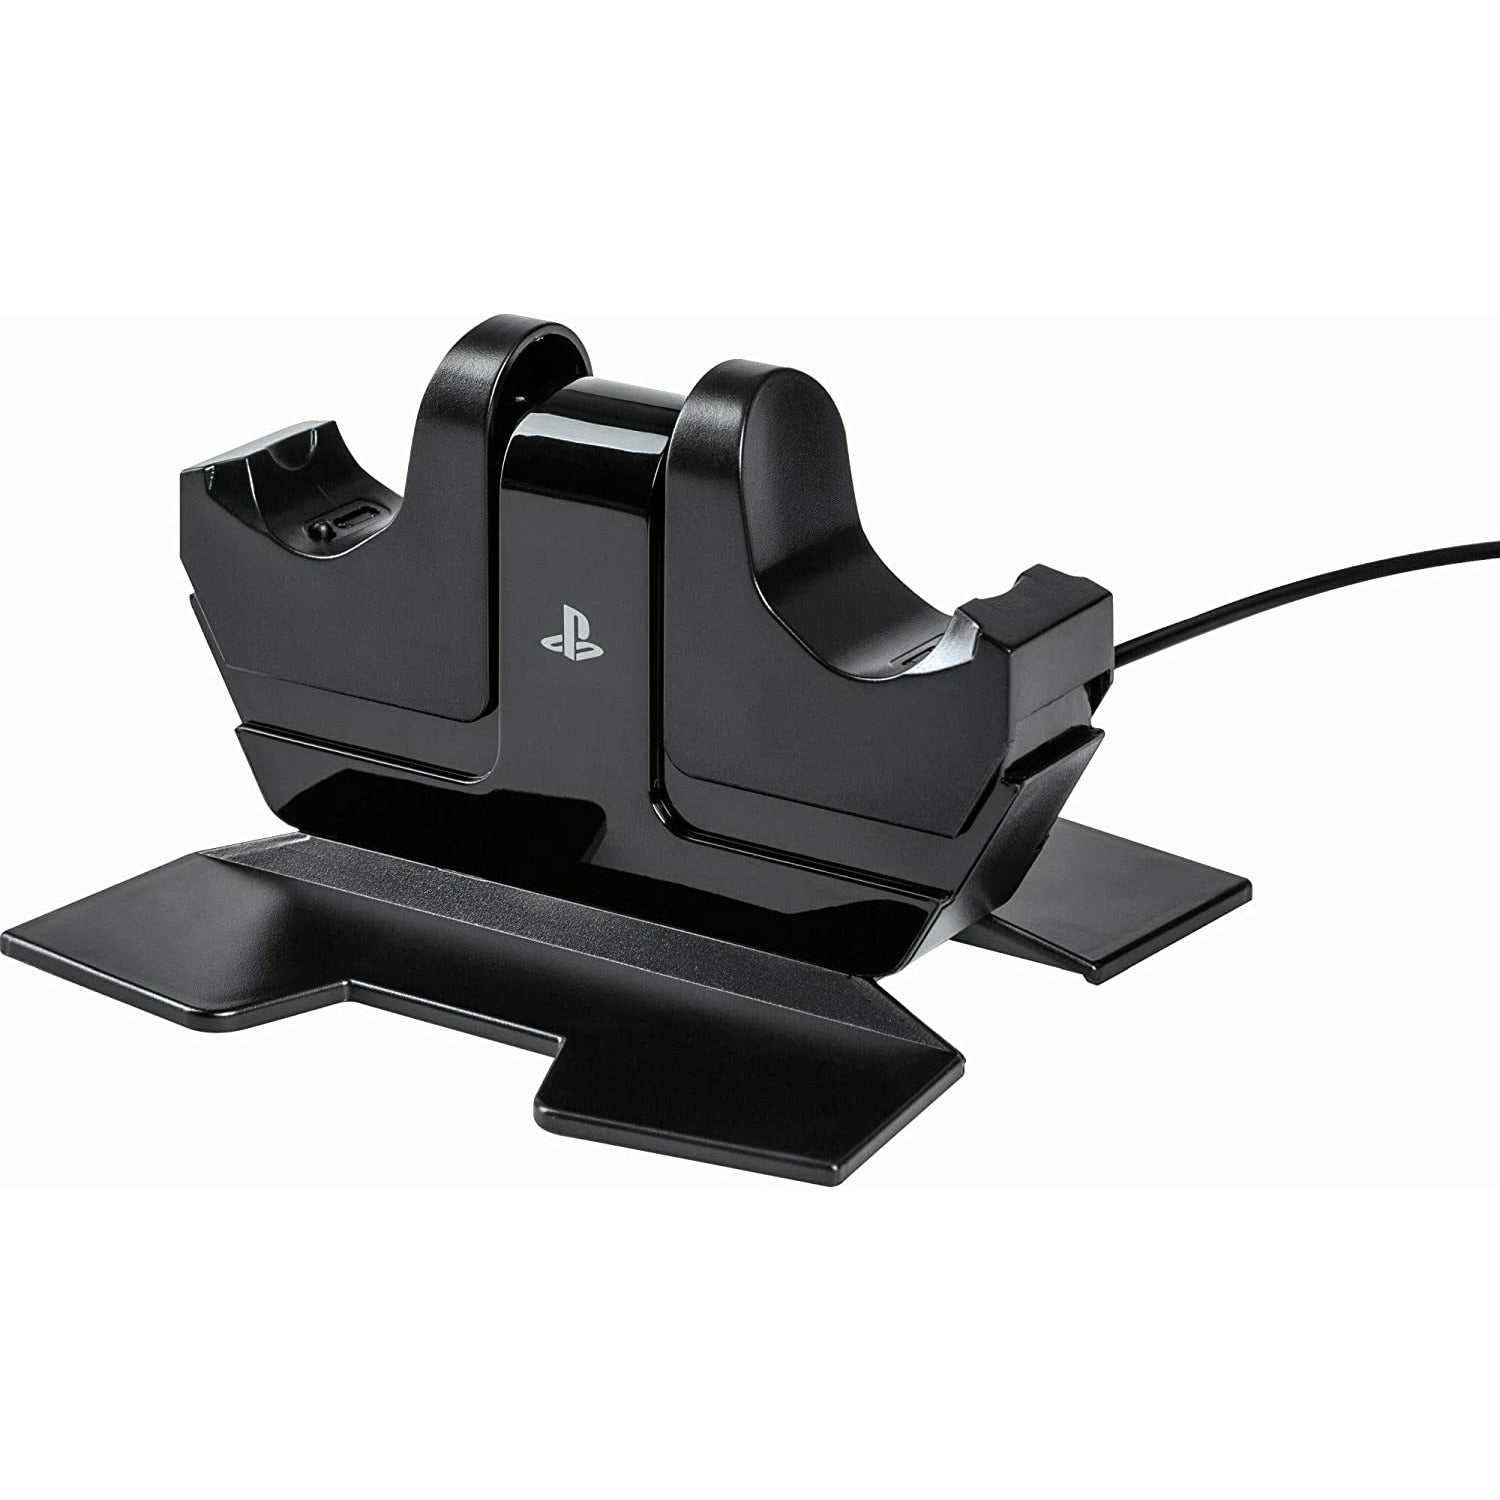 Base de carga para controles PS5 PowerA OFICIAL Playstation